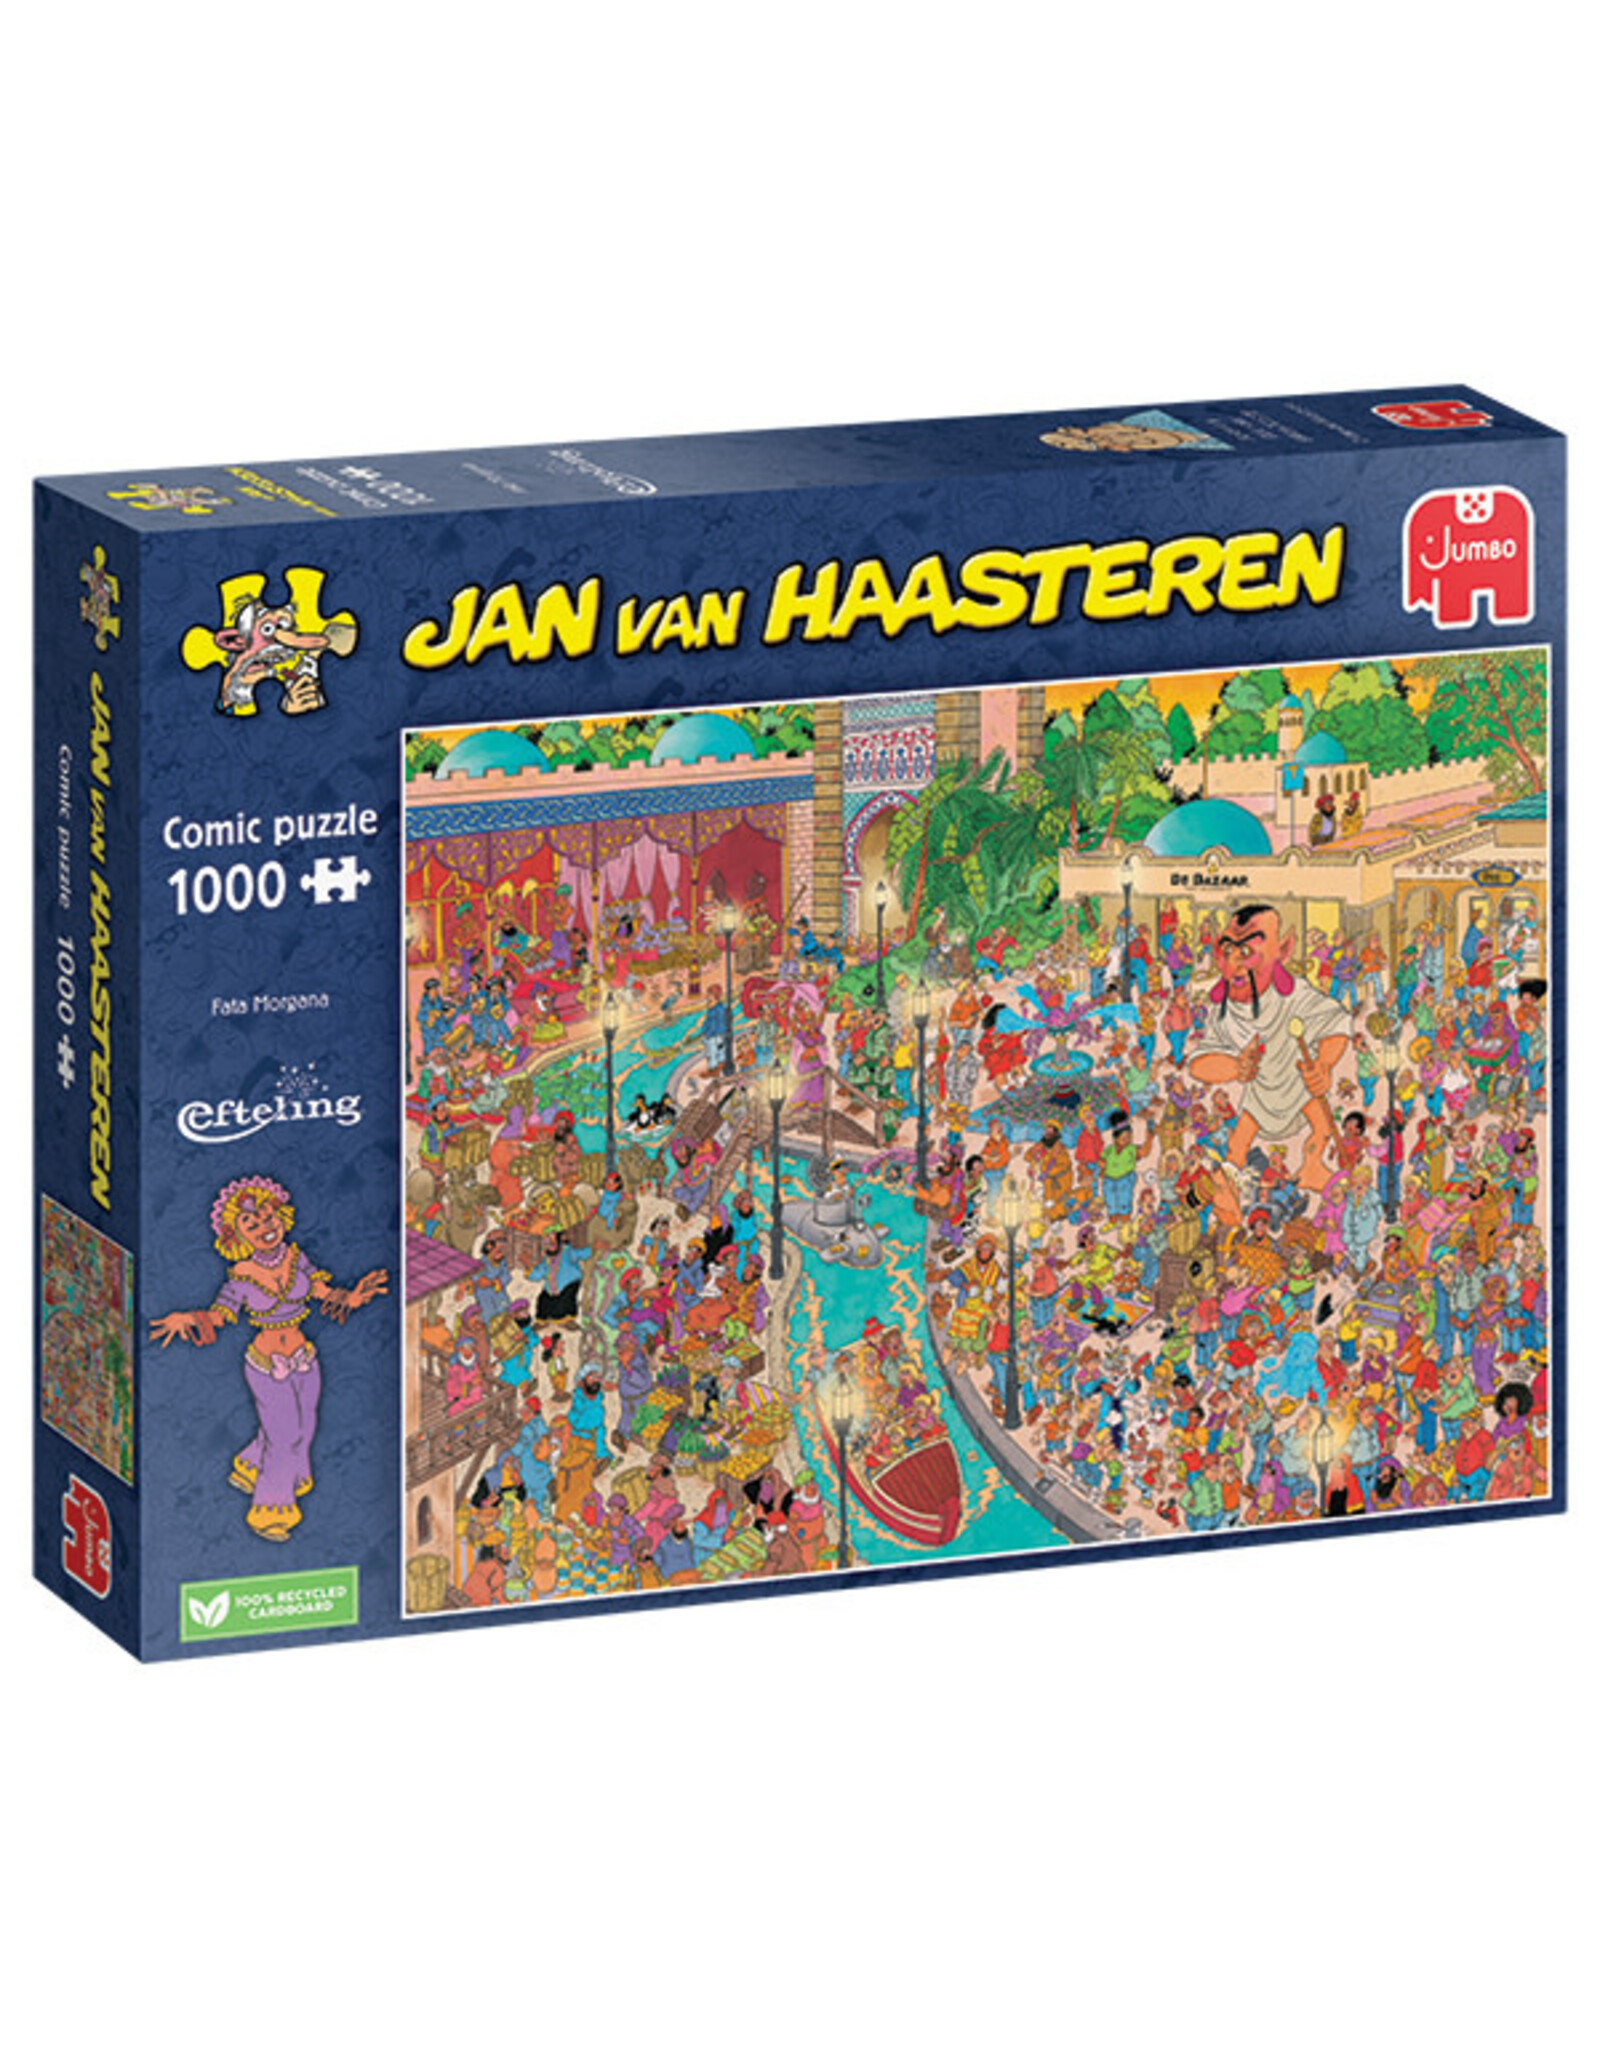 Jumbo Efteling Fata Morgana, Jan Van Haasteren 1000pc